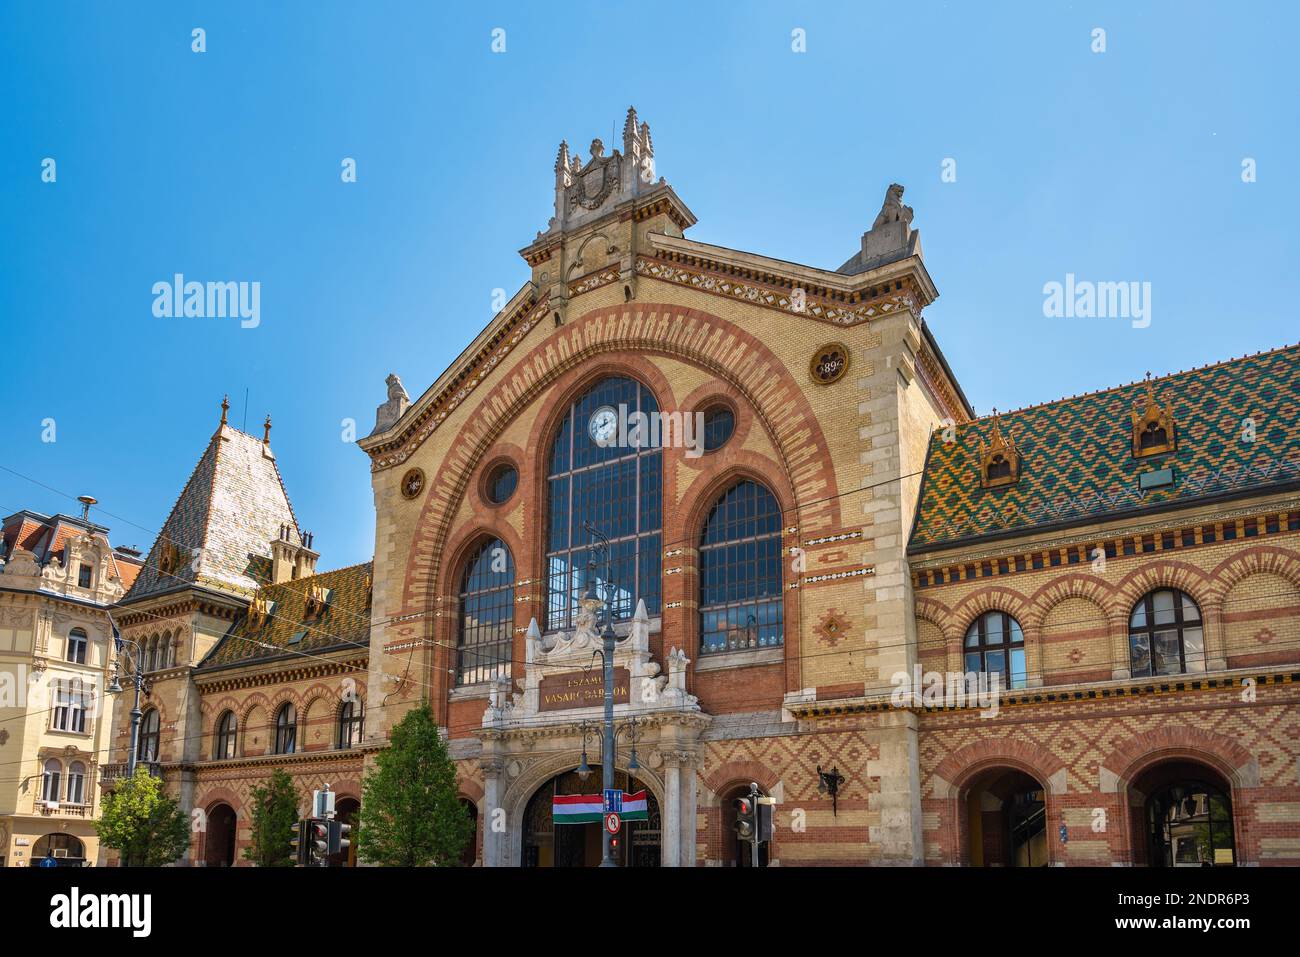 Budapest, Hongrie - 19 avril 2019 : vue d'ensemble de la ville au Grand marché de Budapest (marché central) Banque D'Images